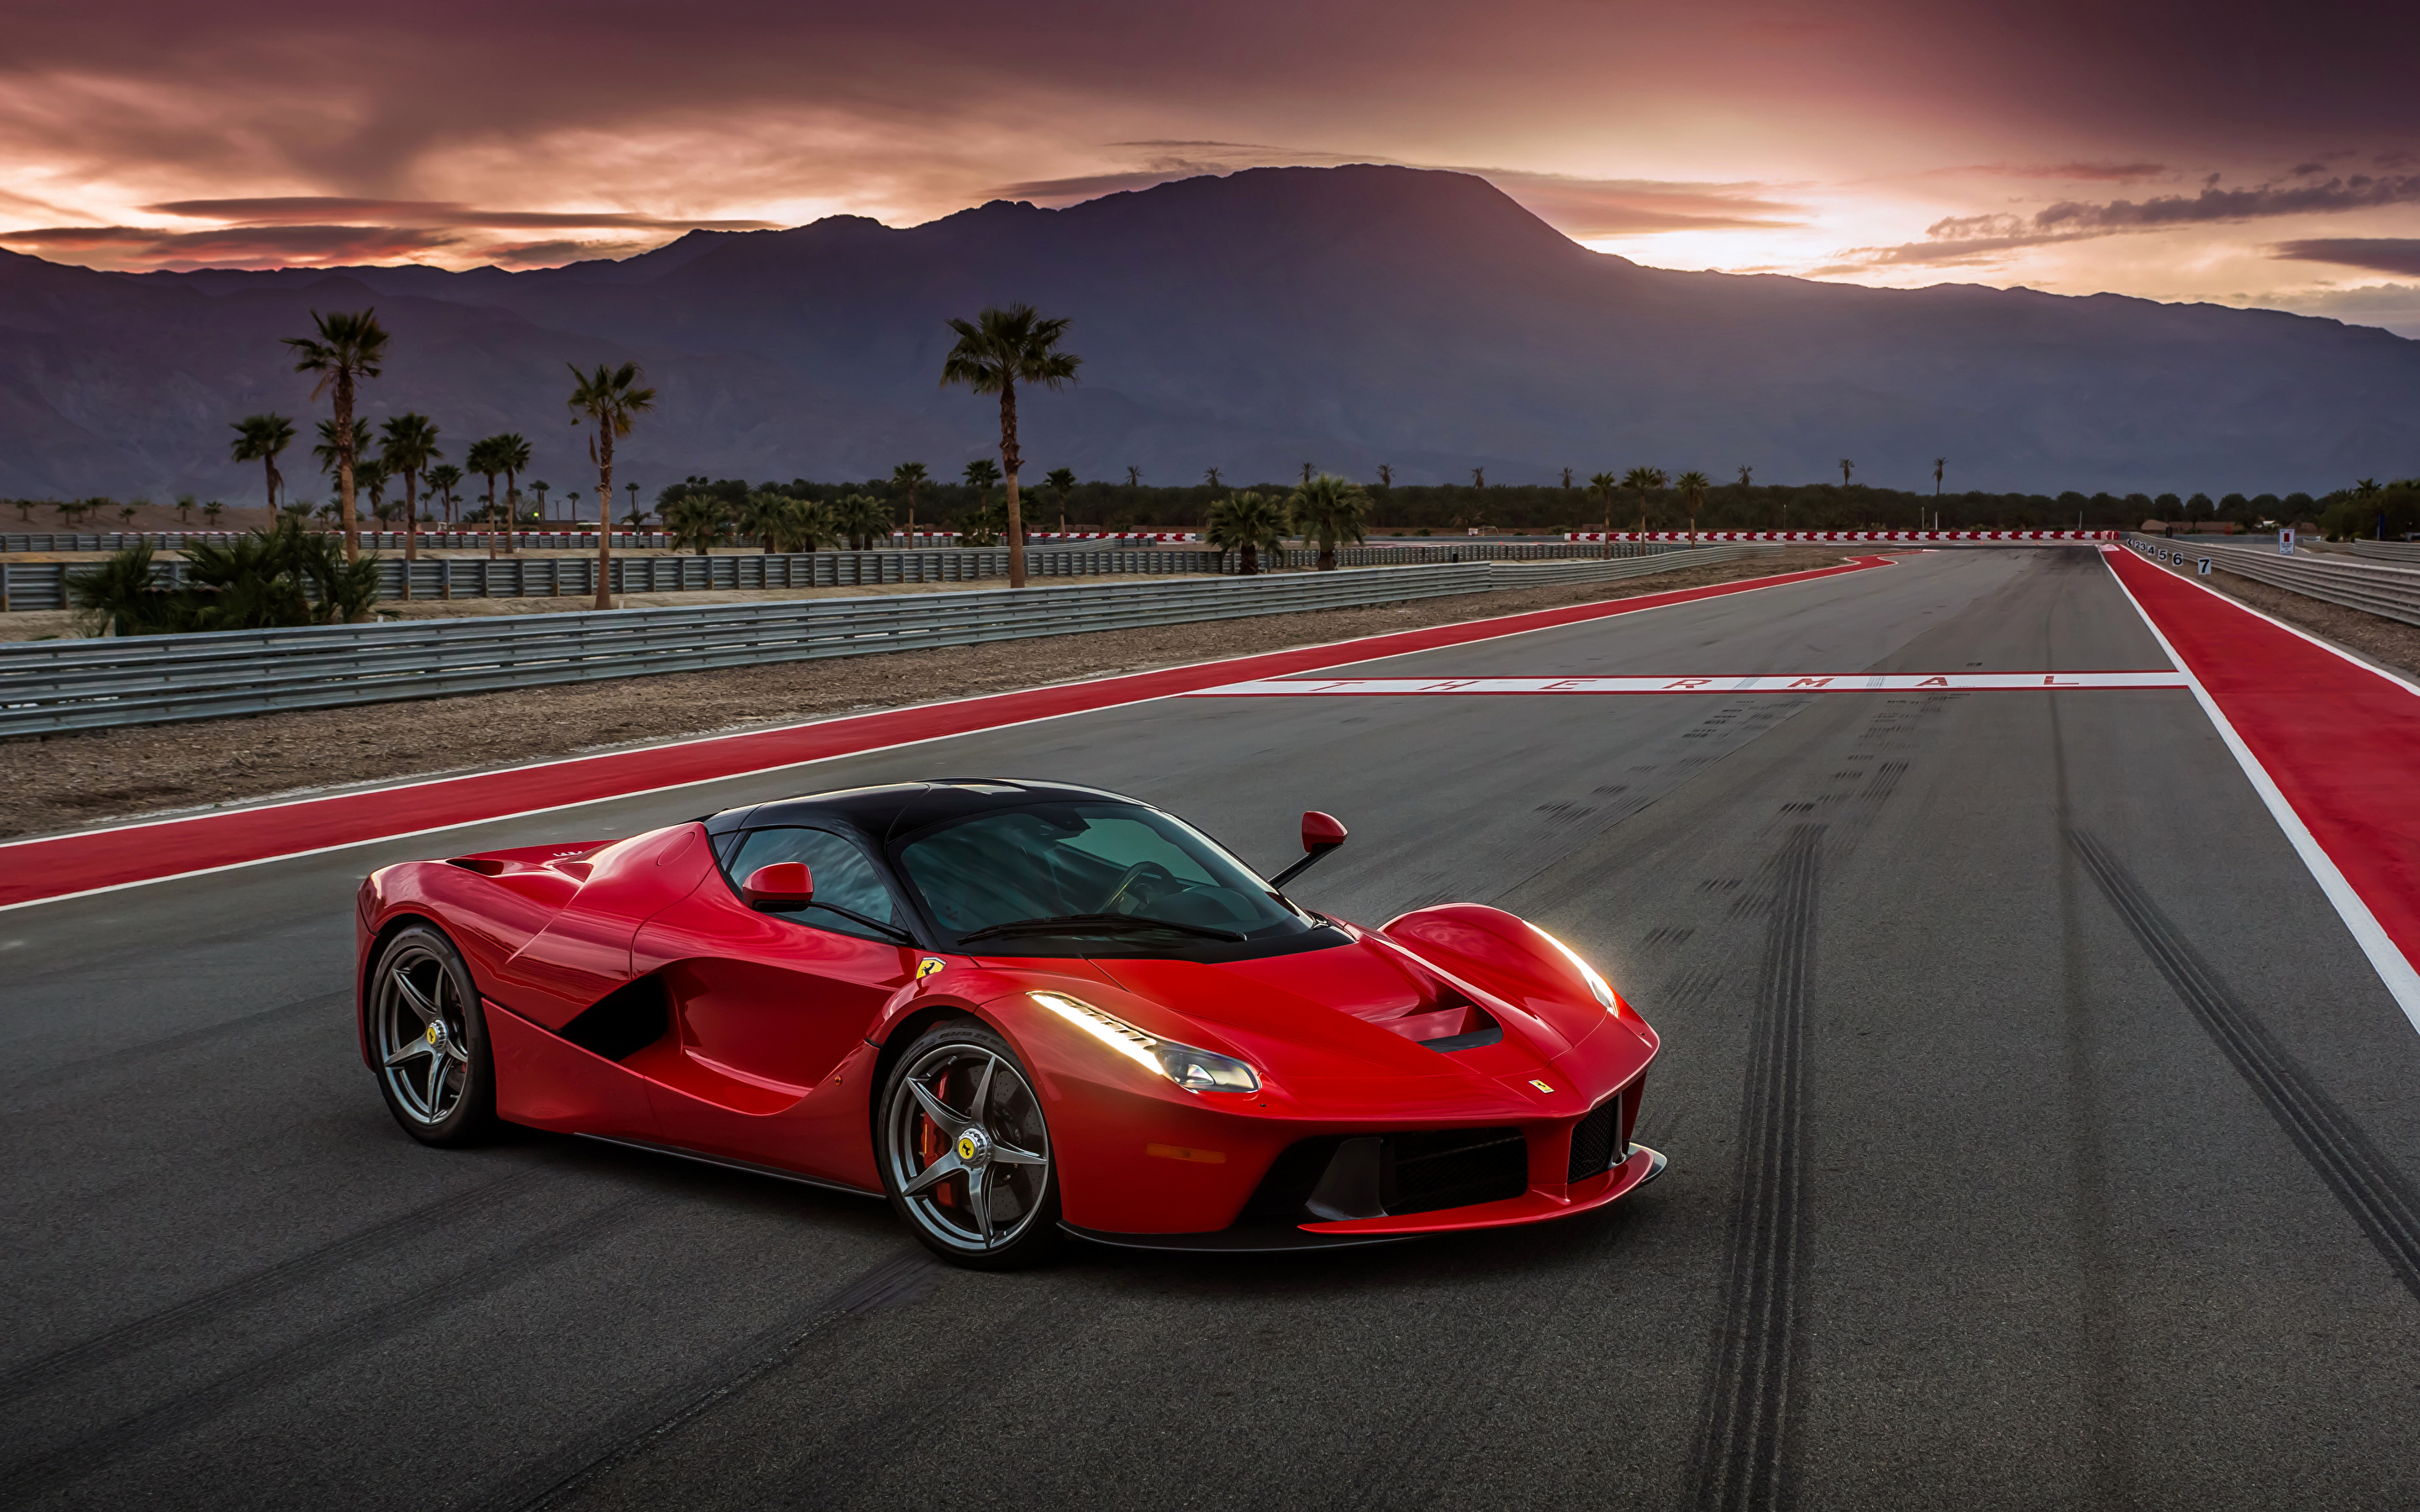 Ferrari CEO'su açıkladı: 2025 yılına kadar elektrikli model üretmeyeceğiz